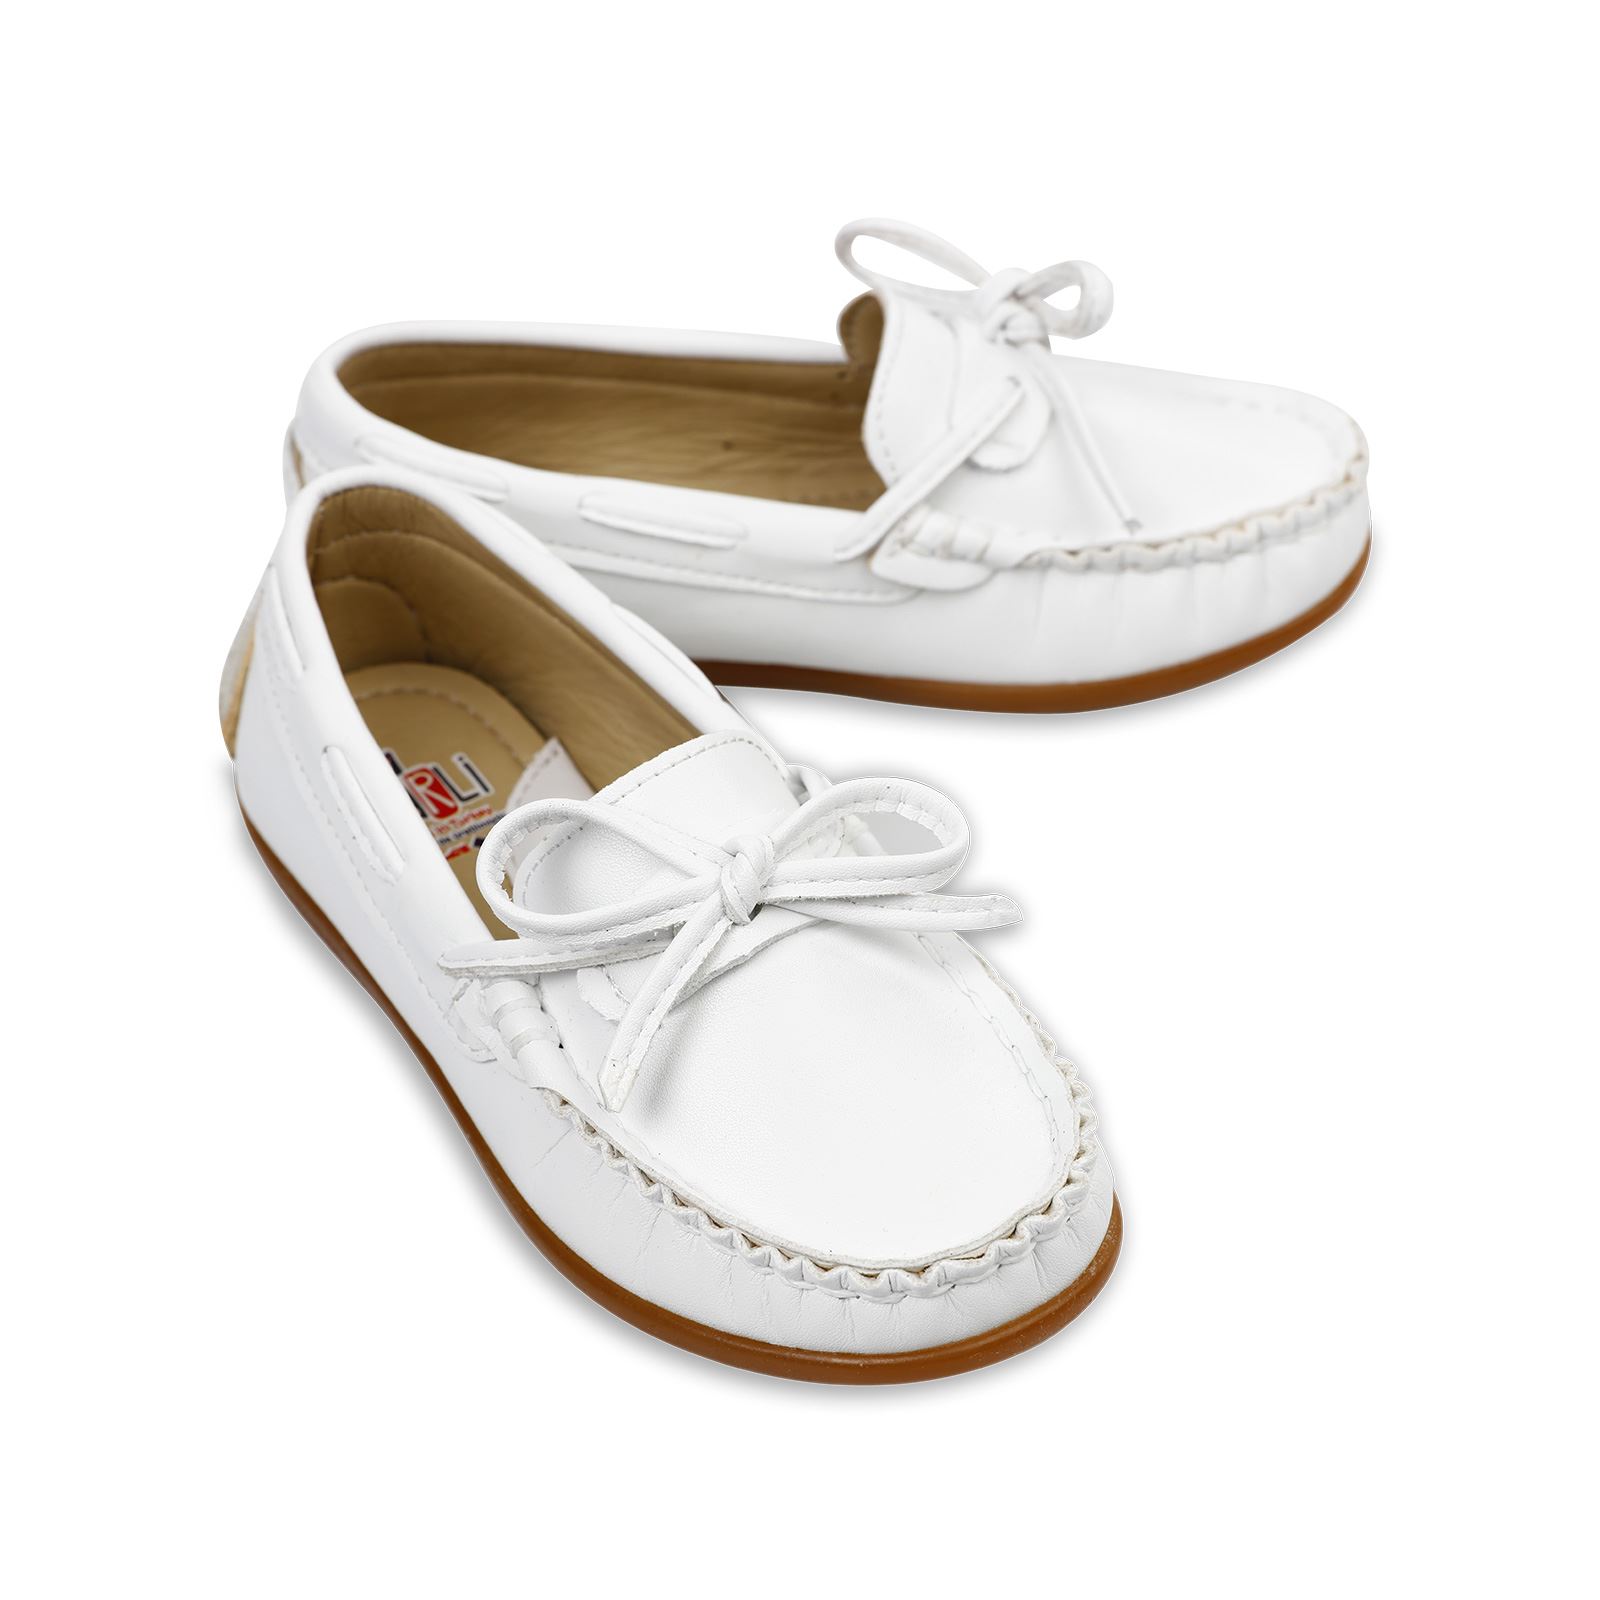 Harli Erkek Çocuk Klasik Ayakkabı 26-30 Numara Beyaz